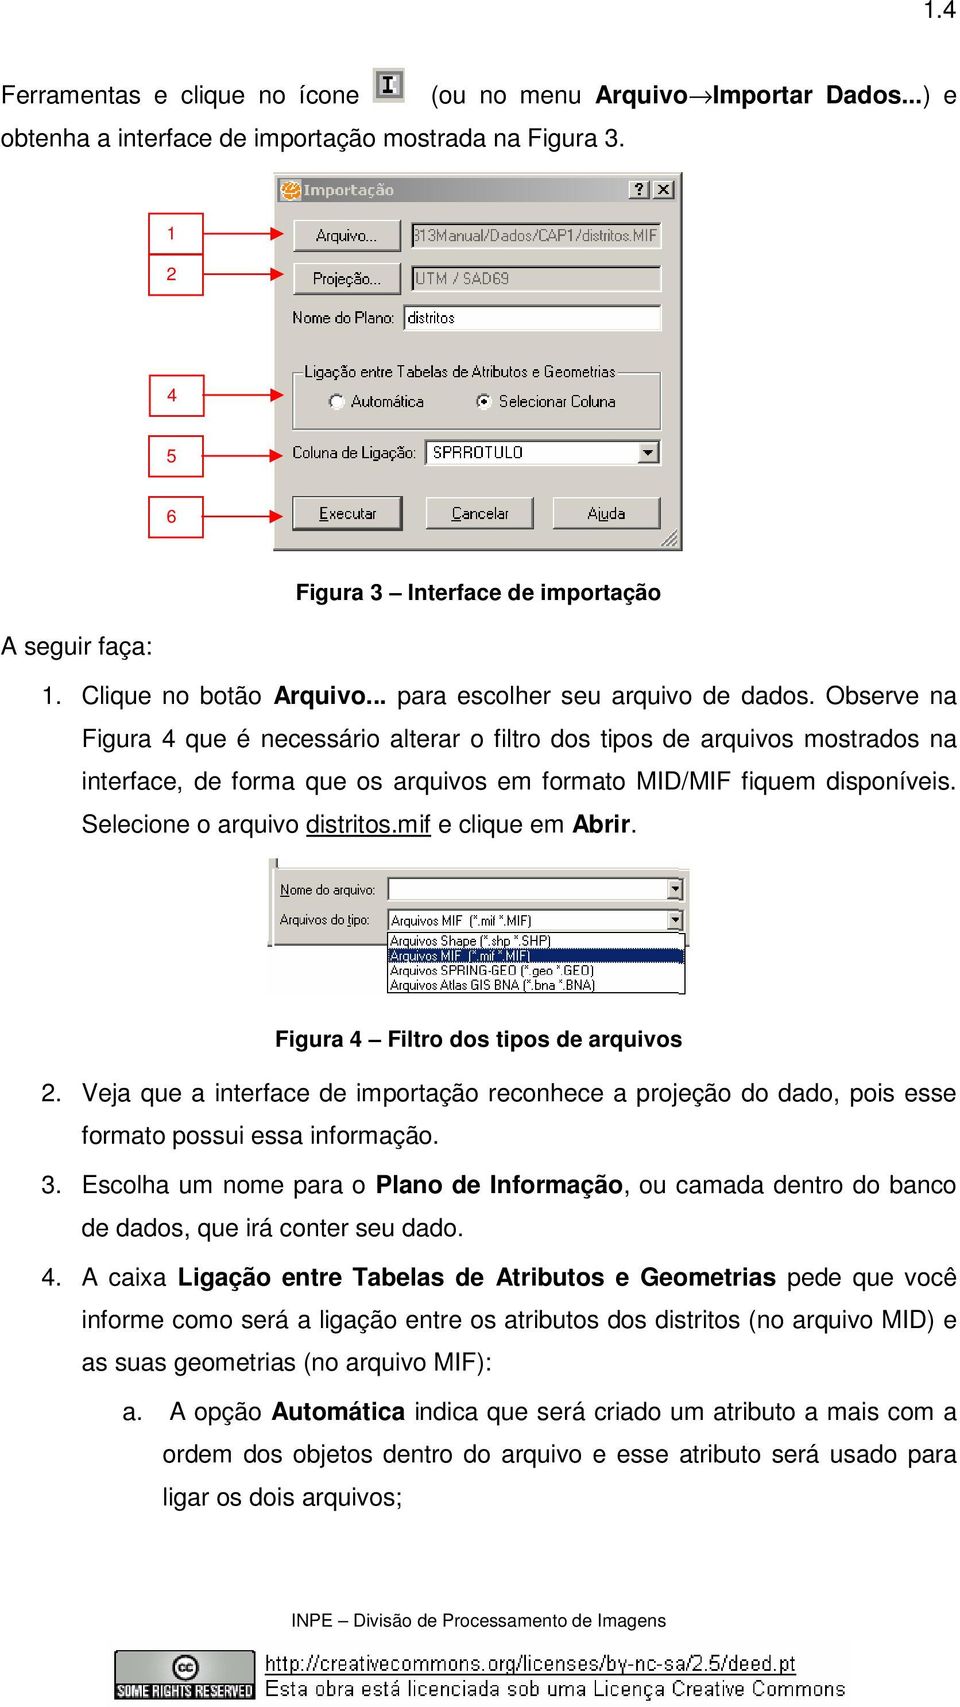 Observe na Figura 4 que é necessário alterar o filtro dos tipos de arquivos mostrados na interface, de forma que os arquivos em formato MID/MIF fiquem disponíveis. Selecione o arquivo distritos.